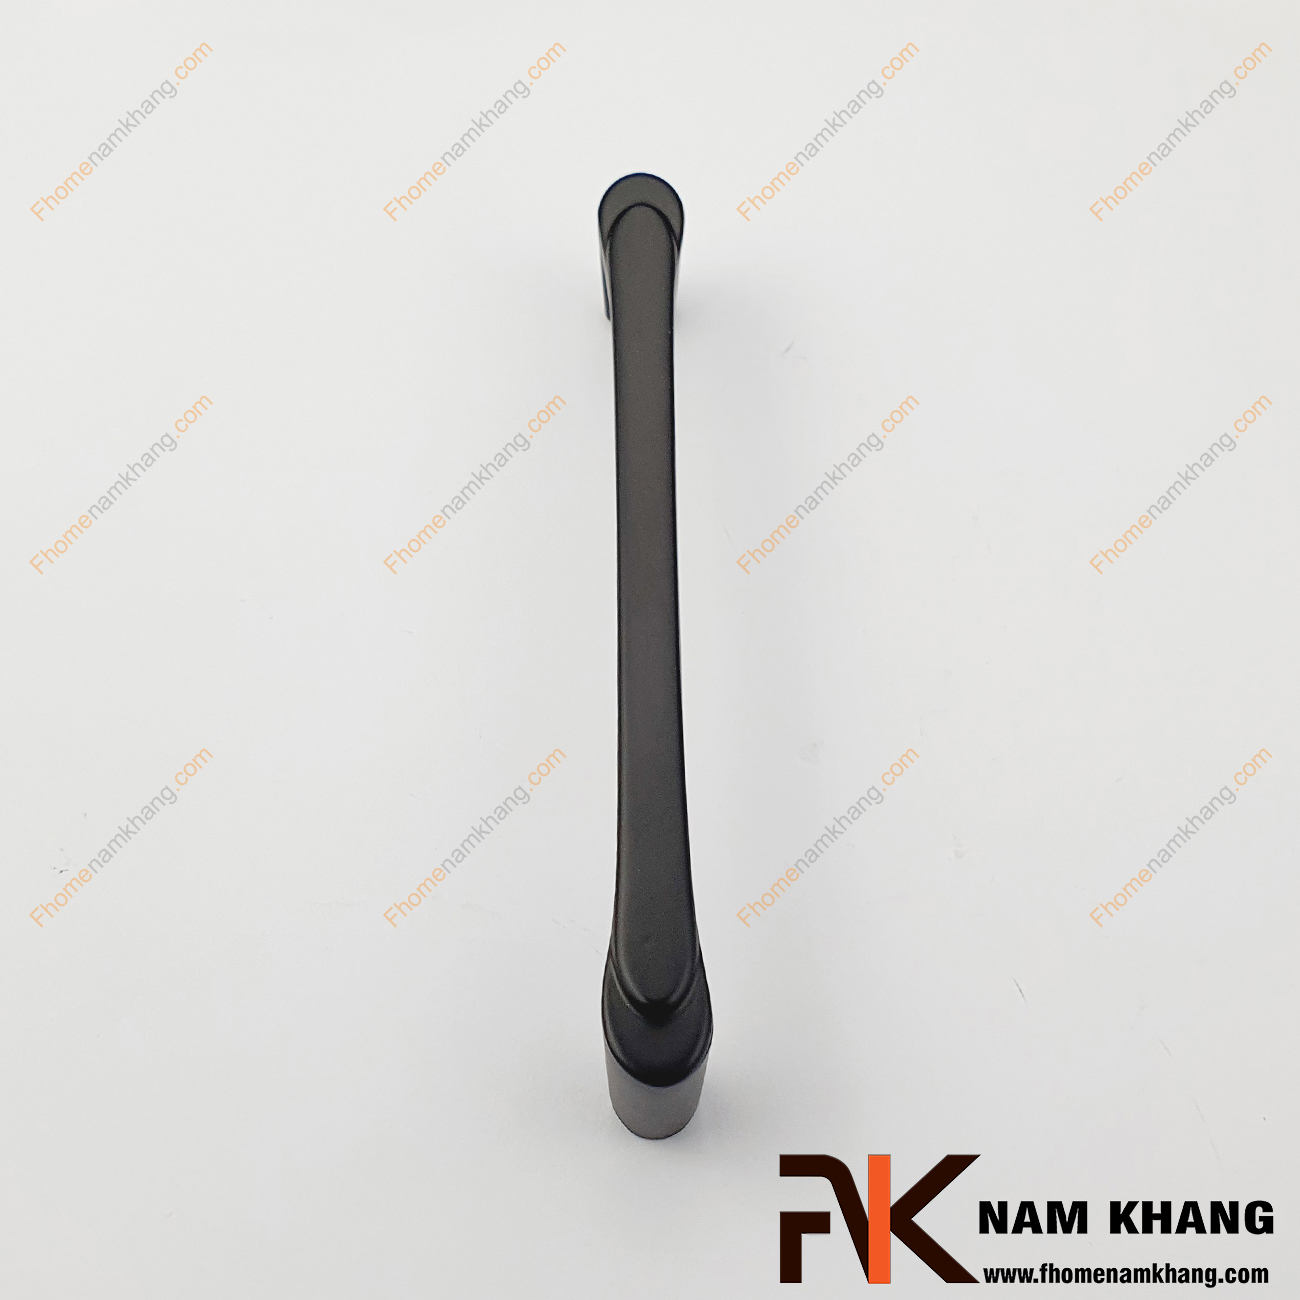 Tay nắm tủ màu đen mờ NK458-D được thiết kế với phong cách hiện đại, kiểu dáng thon gọn bóng mượt thu hút ánh nhìn và mang lại cảm giác cầm nắm thoải mái